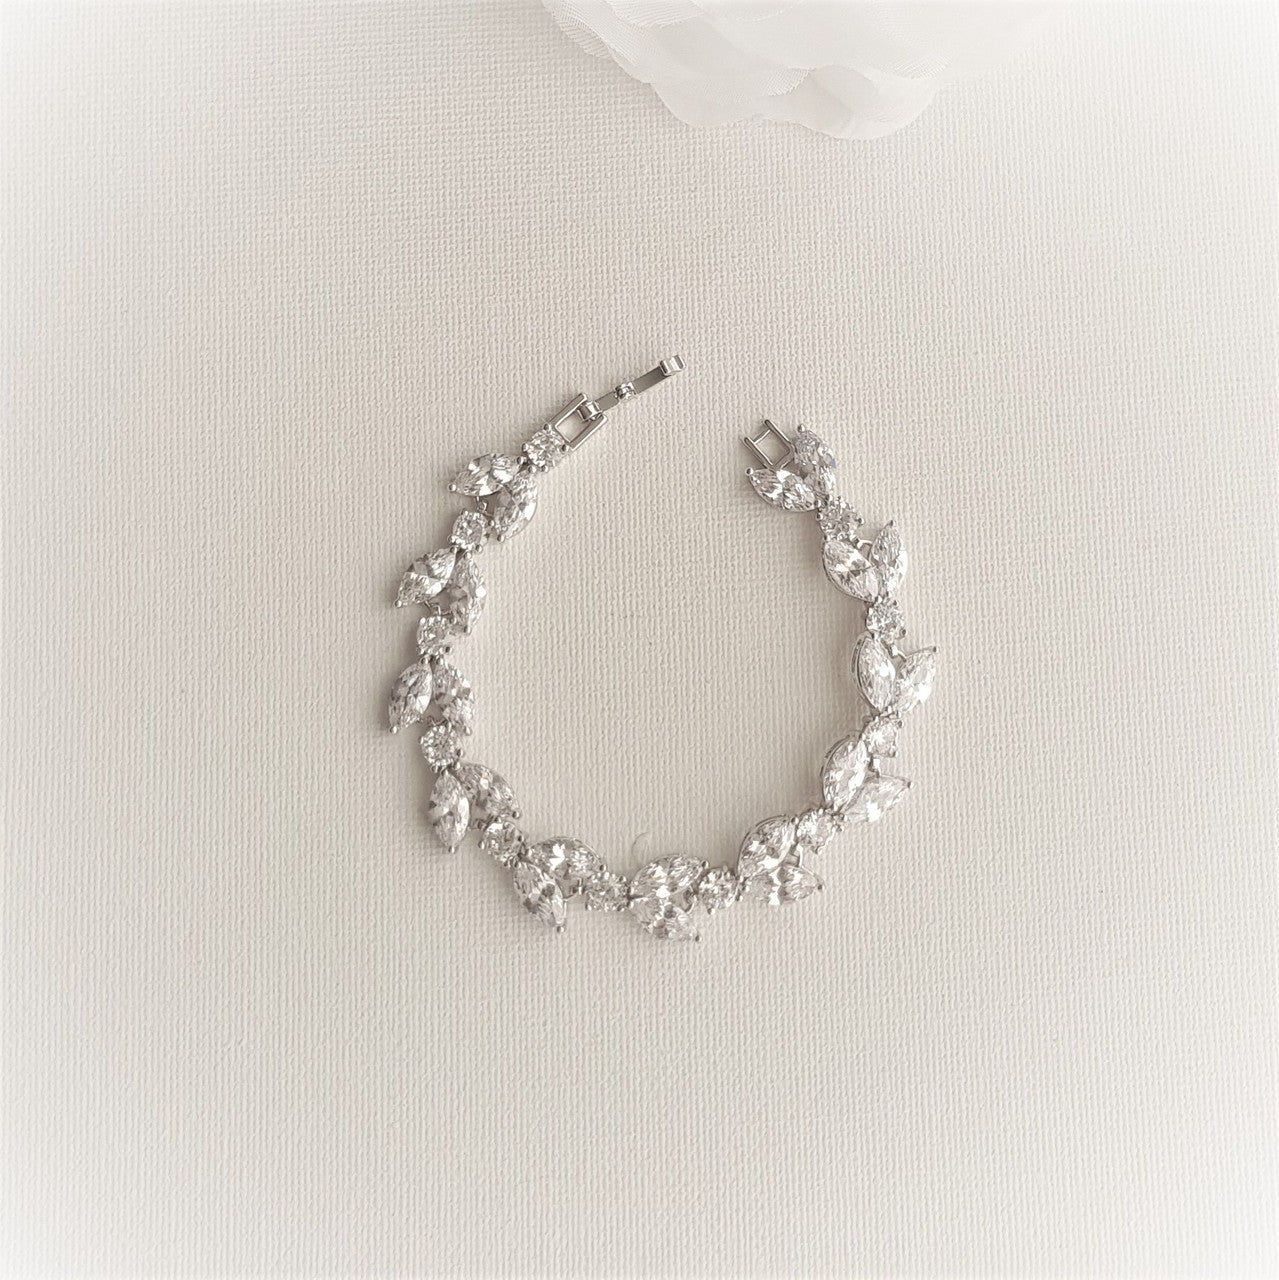 Cubic Zirconia Wedding Day Bracelet- Mia